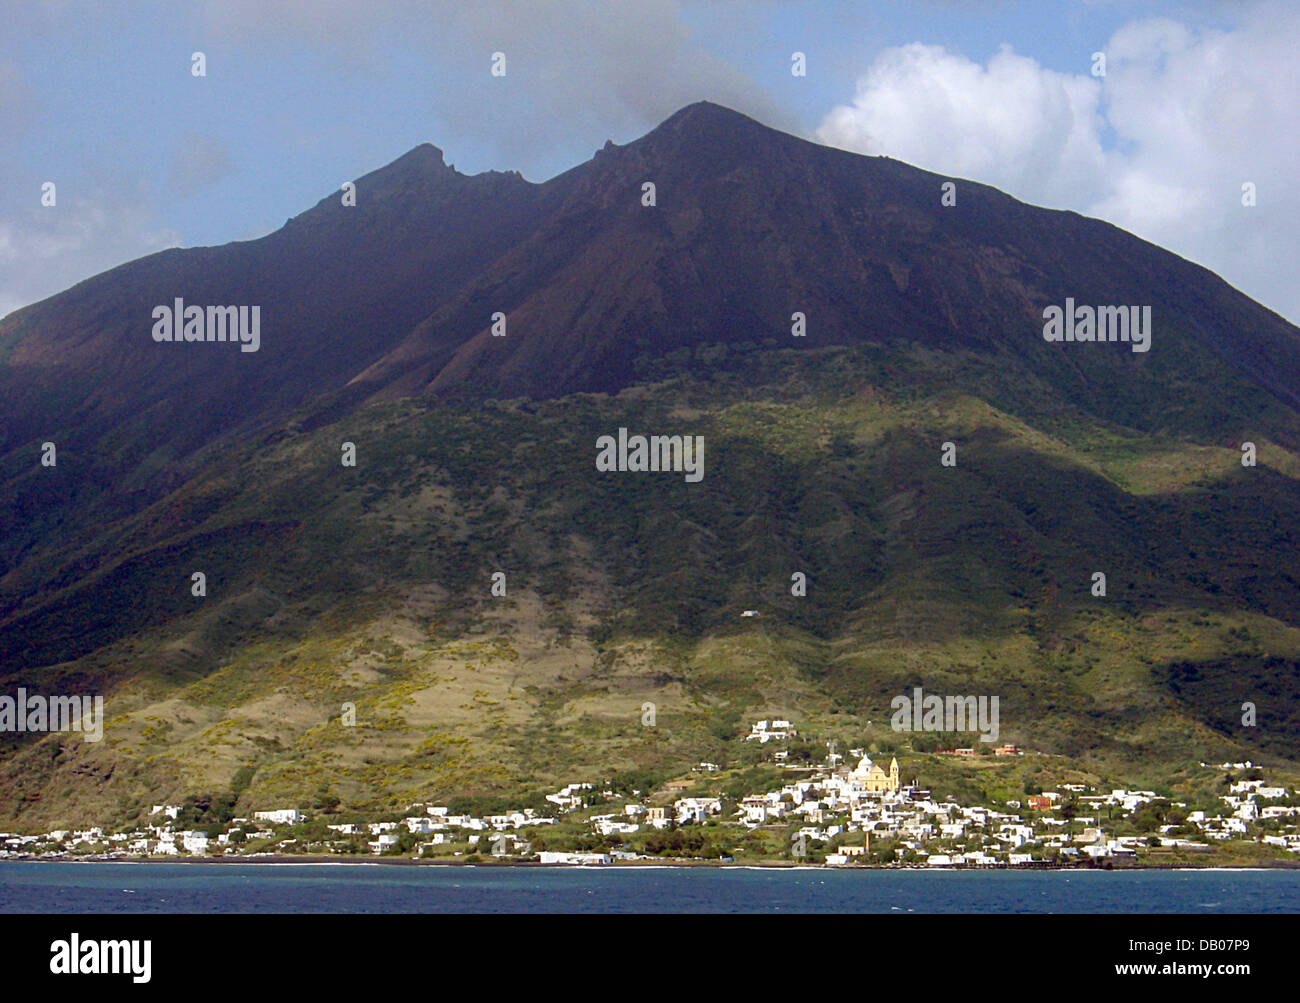 Das Bild zeigt das Dorf Stromboli auf der Äolischen Insel mit dem gleichen Namen in Italien, 30. Mai 2007. Die Äolischen Inseln mit den wichtigsten Insel Liparei und Salina sind eine vulkanische Inselgruppe Offshore-Nordküste Sizilien. Die Inseln bestehen aus Asche und Lava von meist erloschenen Vulkanen. Die Archipleago gehört zu der Provinz Messina liegt in einem Erdbebengebiet Risiko und gehöriger Stockfoto